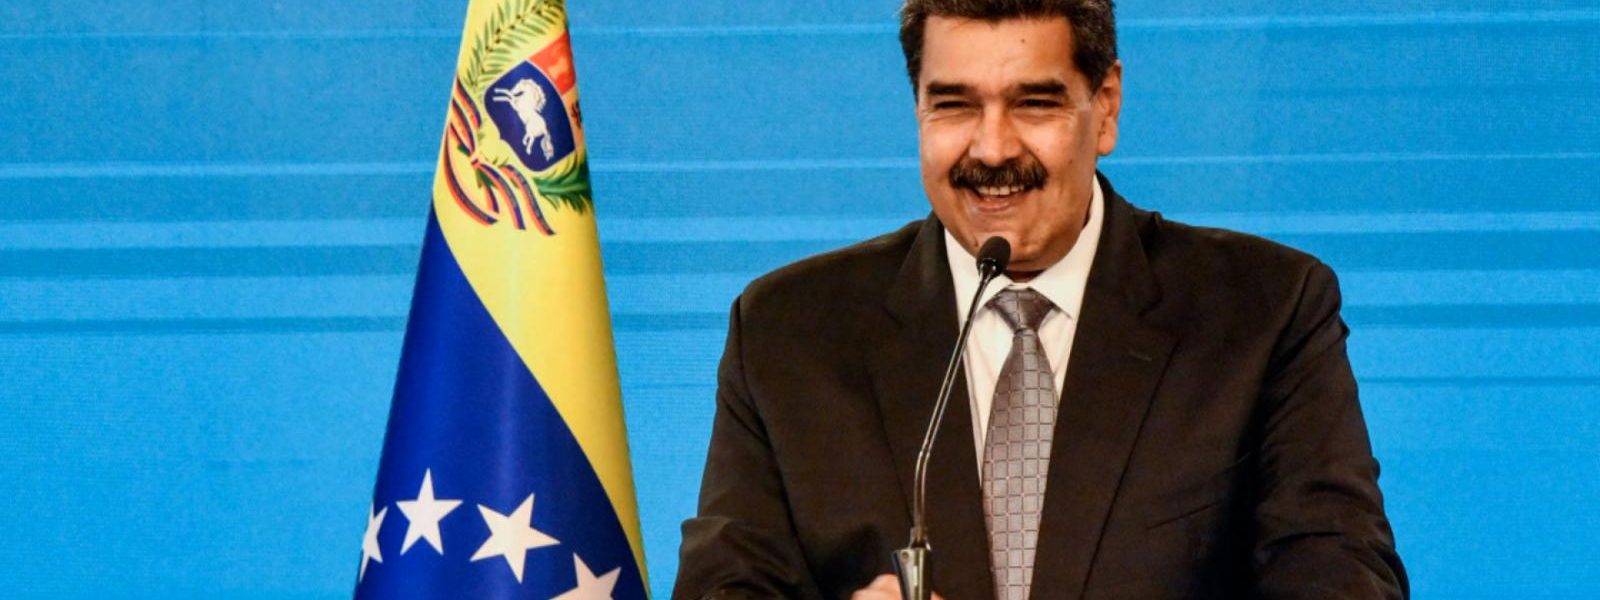 El gobierno de Nicolás Maduro cumple 10 años ¿Cuál es el balance?